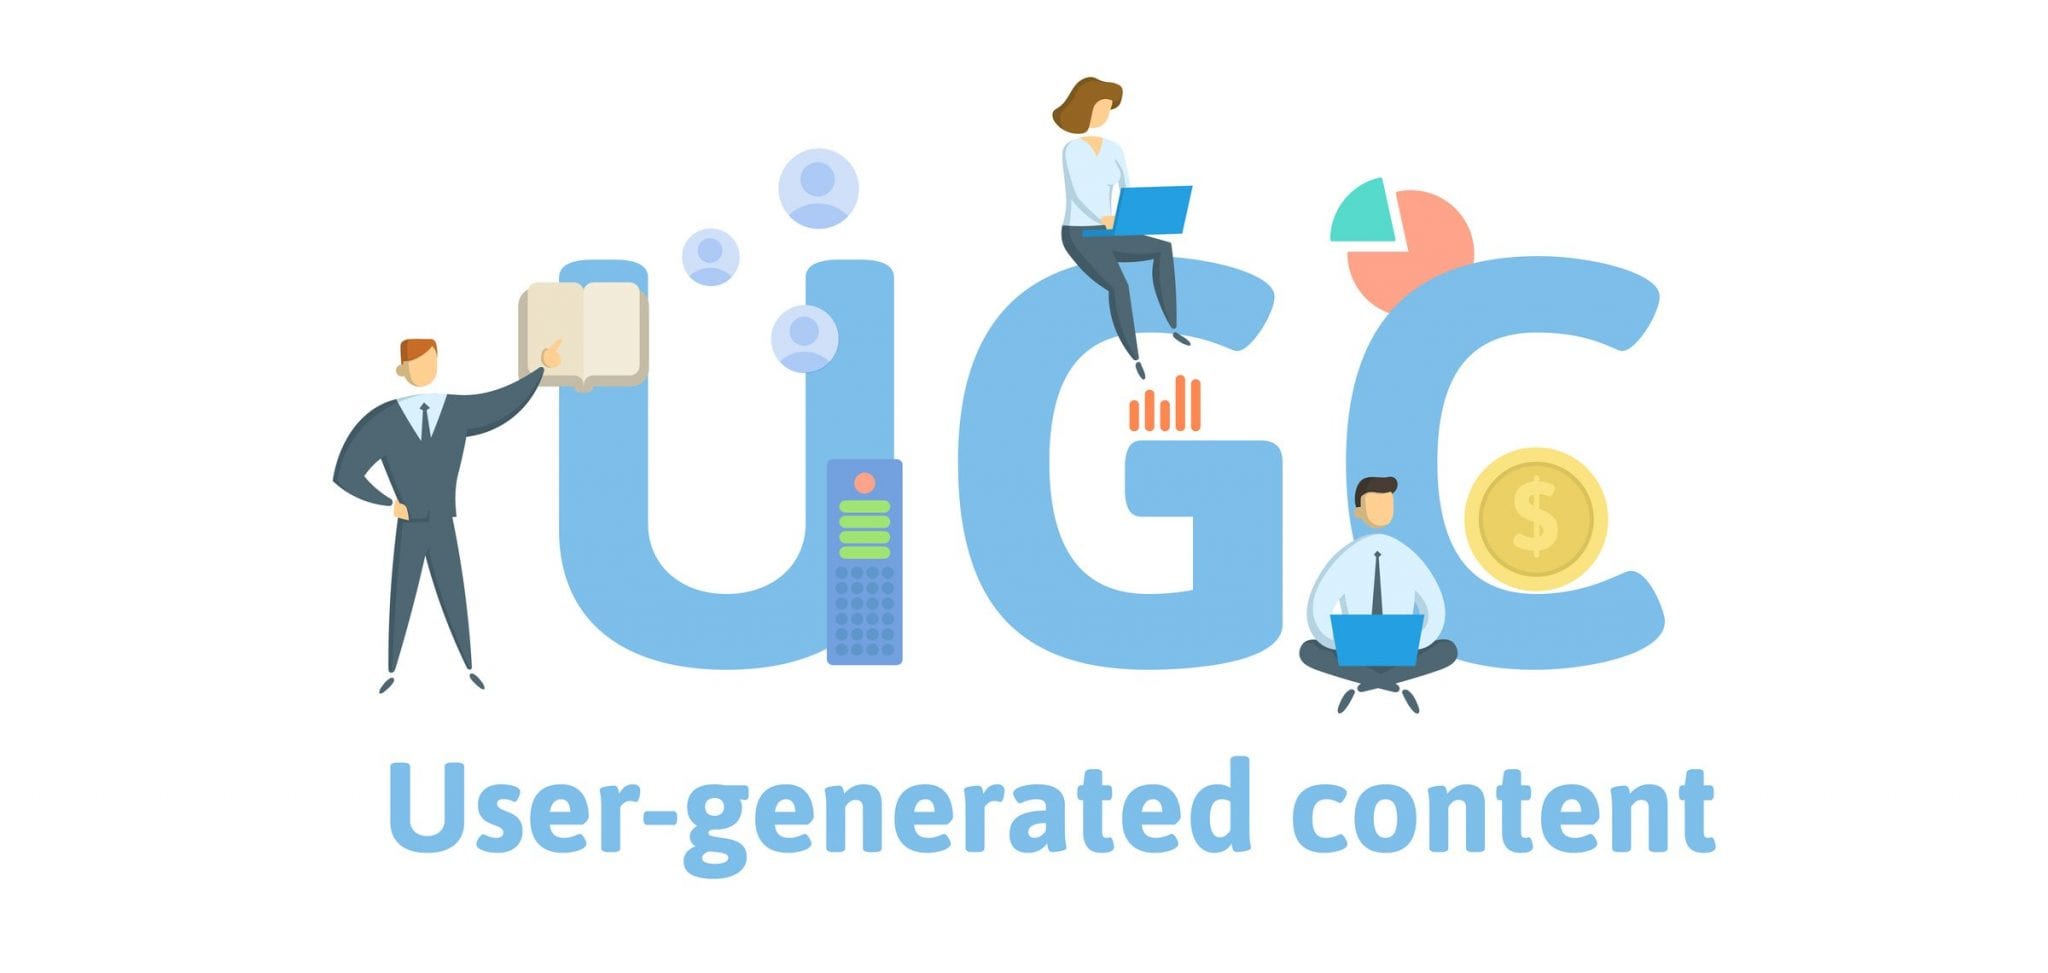 Ugc script. UGC – пользовательский контент. User generated content. UGC user generated content. UGC картинки.